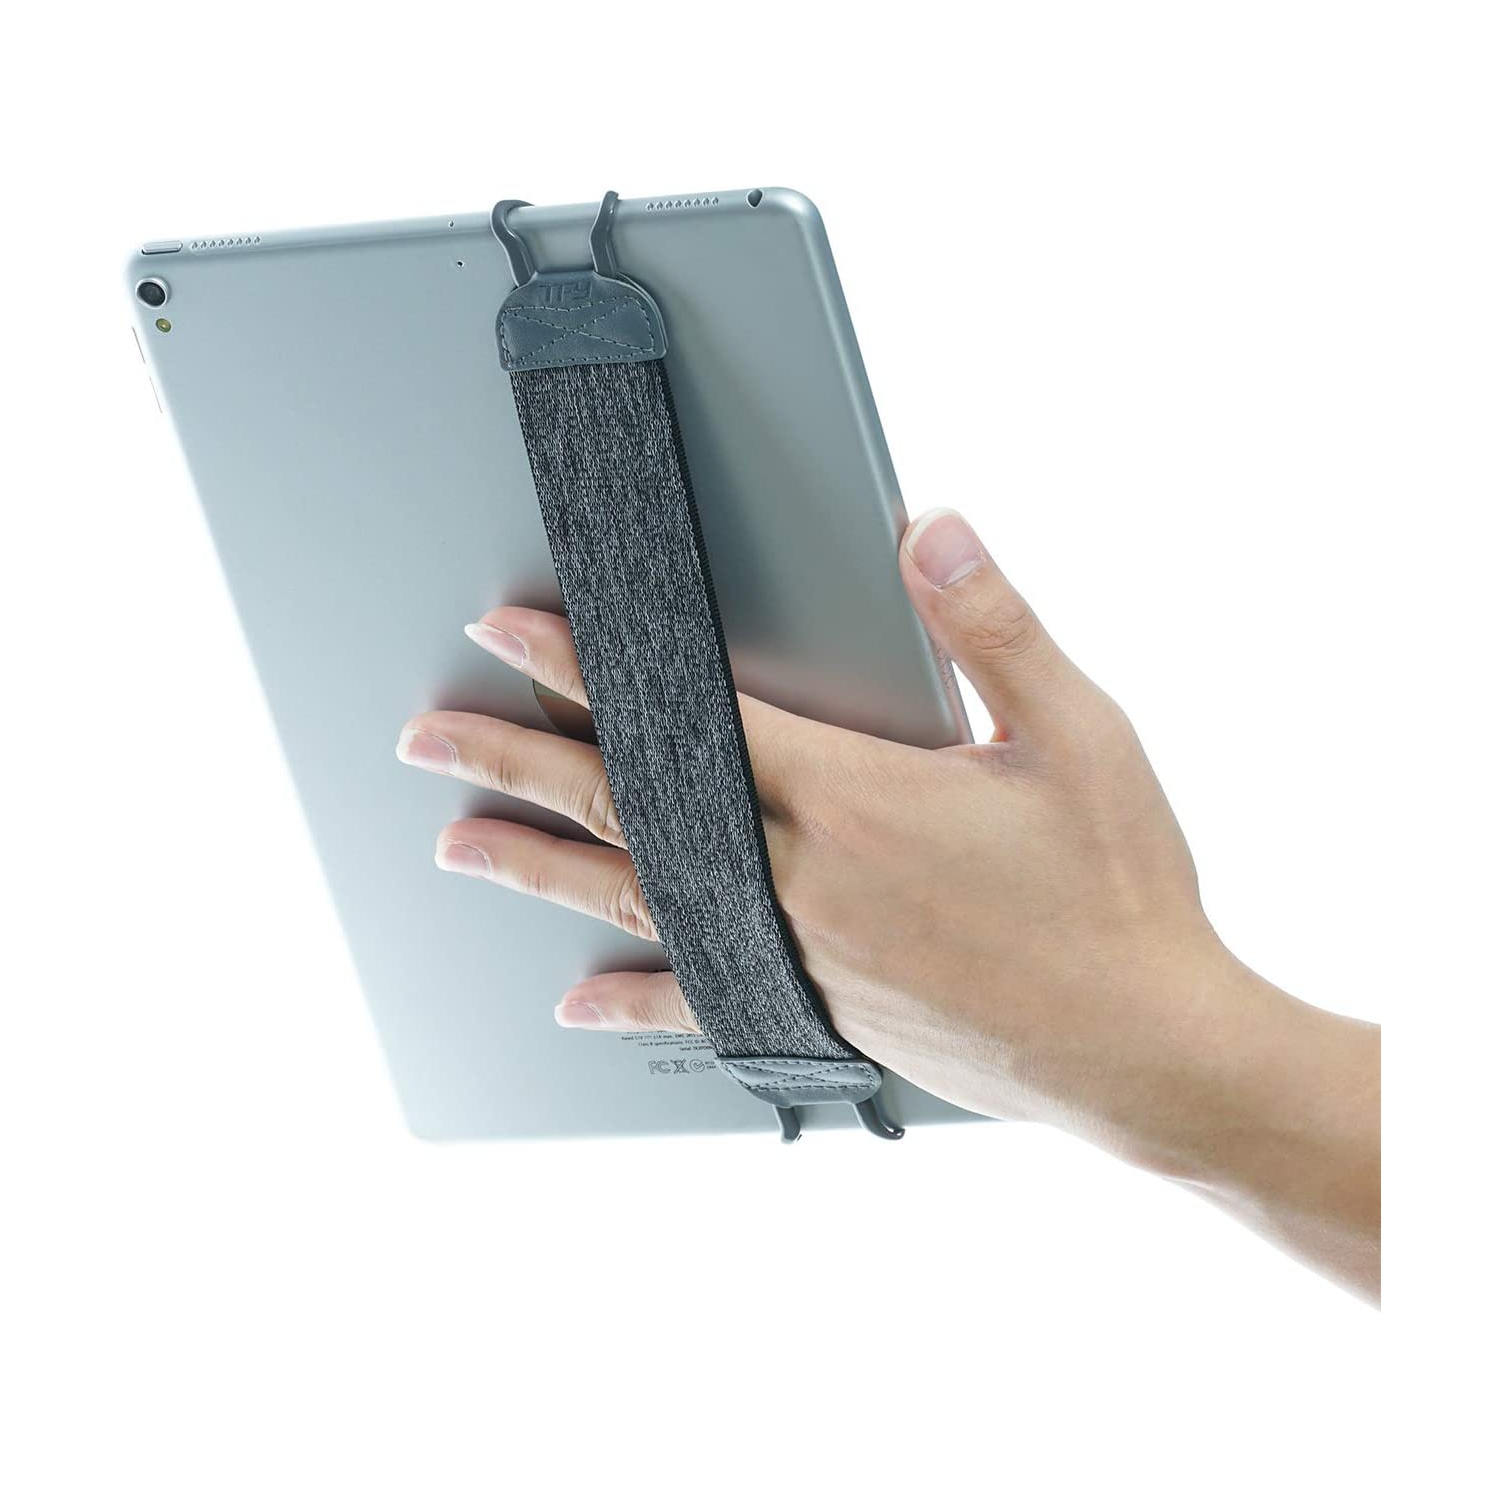 Security Hand Strap Holder for Tablets, iPad, & e-Readers - iPad Pro, iPad, iPad Mini 4, iPad Air 2, Samsung Galaxy